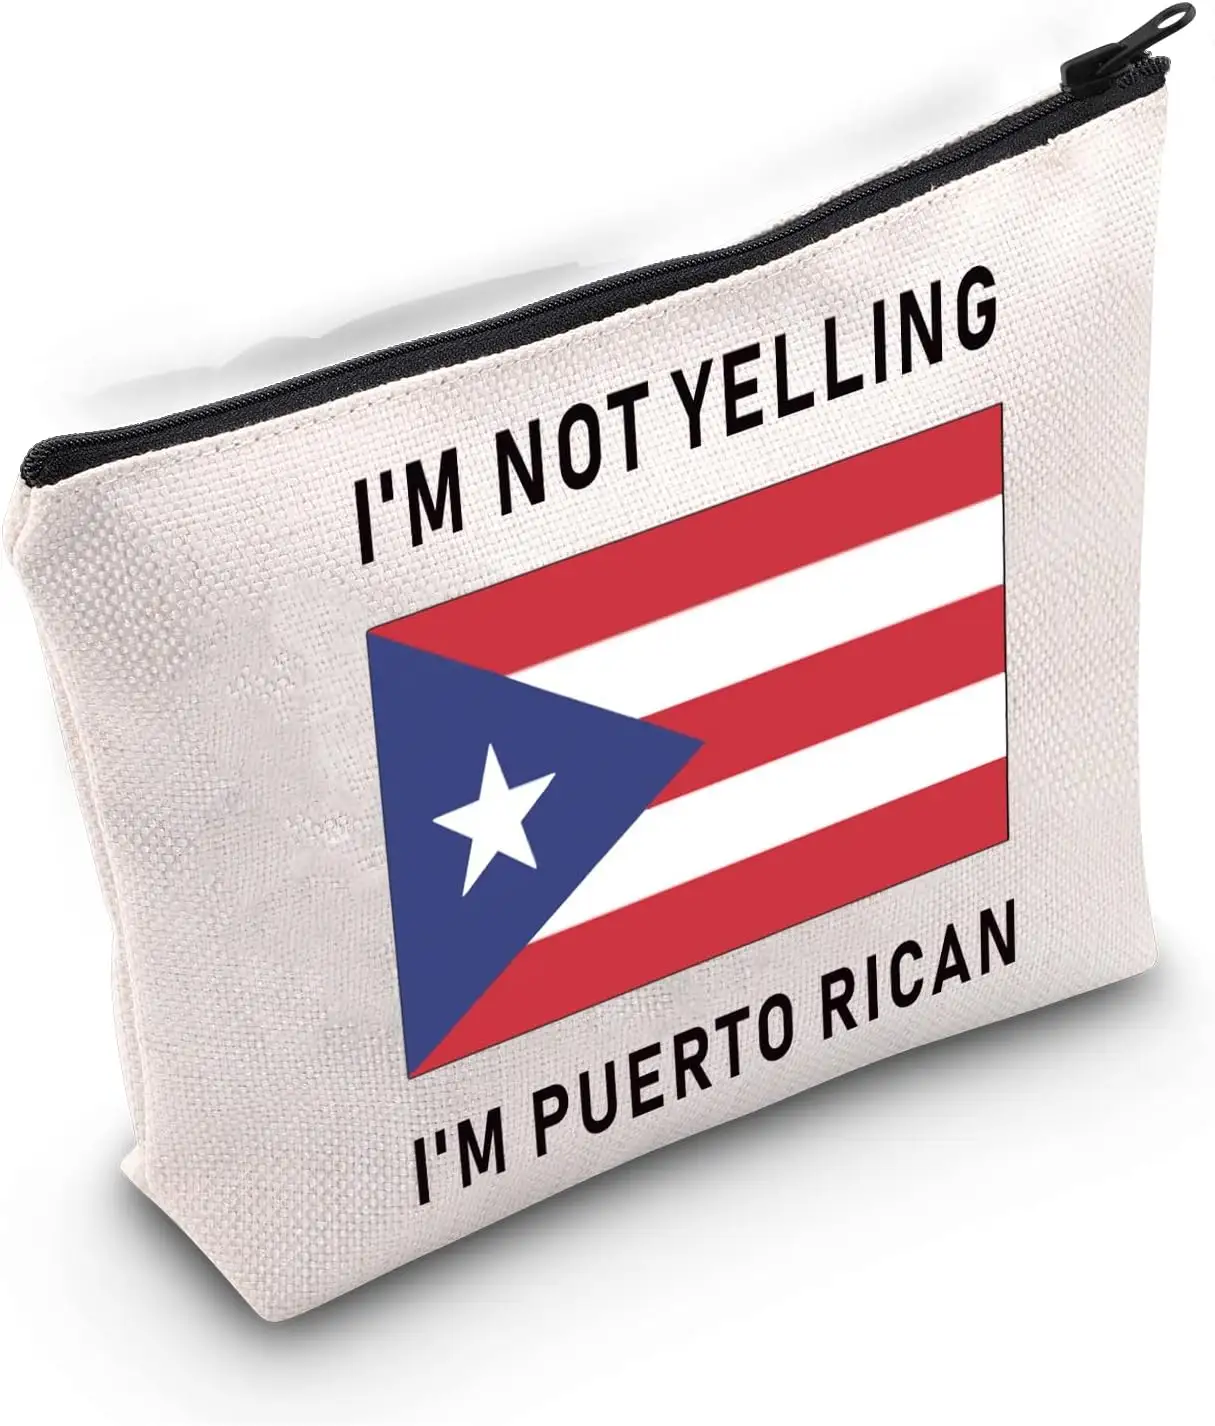 Tas kosmetik kustom lucu Rico Puerto souvenir saya tidak dling saya Puerto Rican Makeup Bags